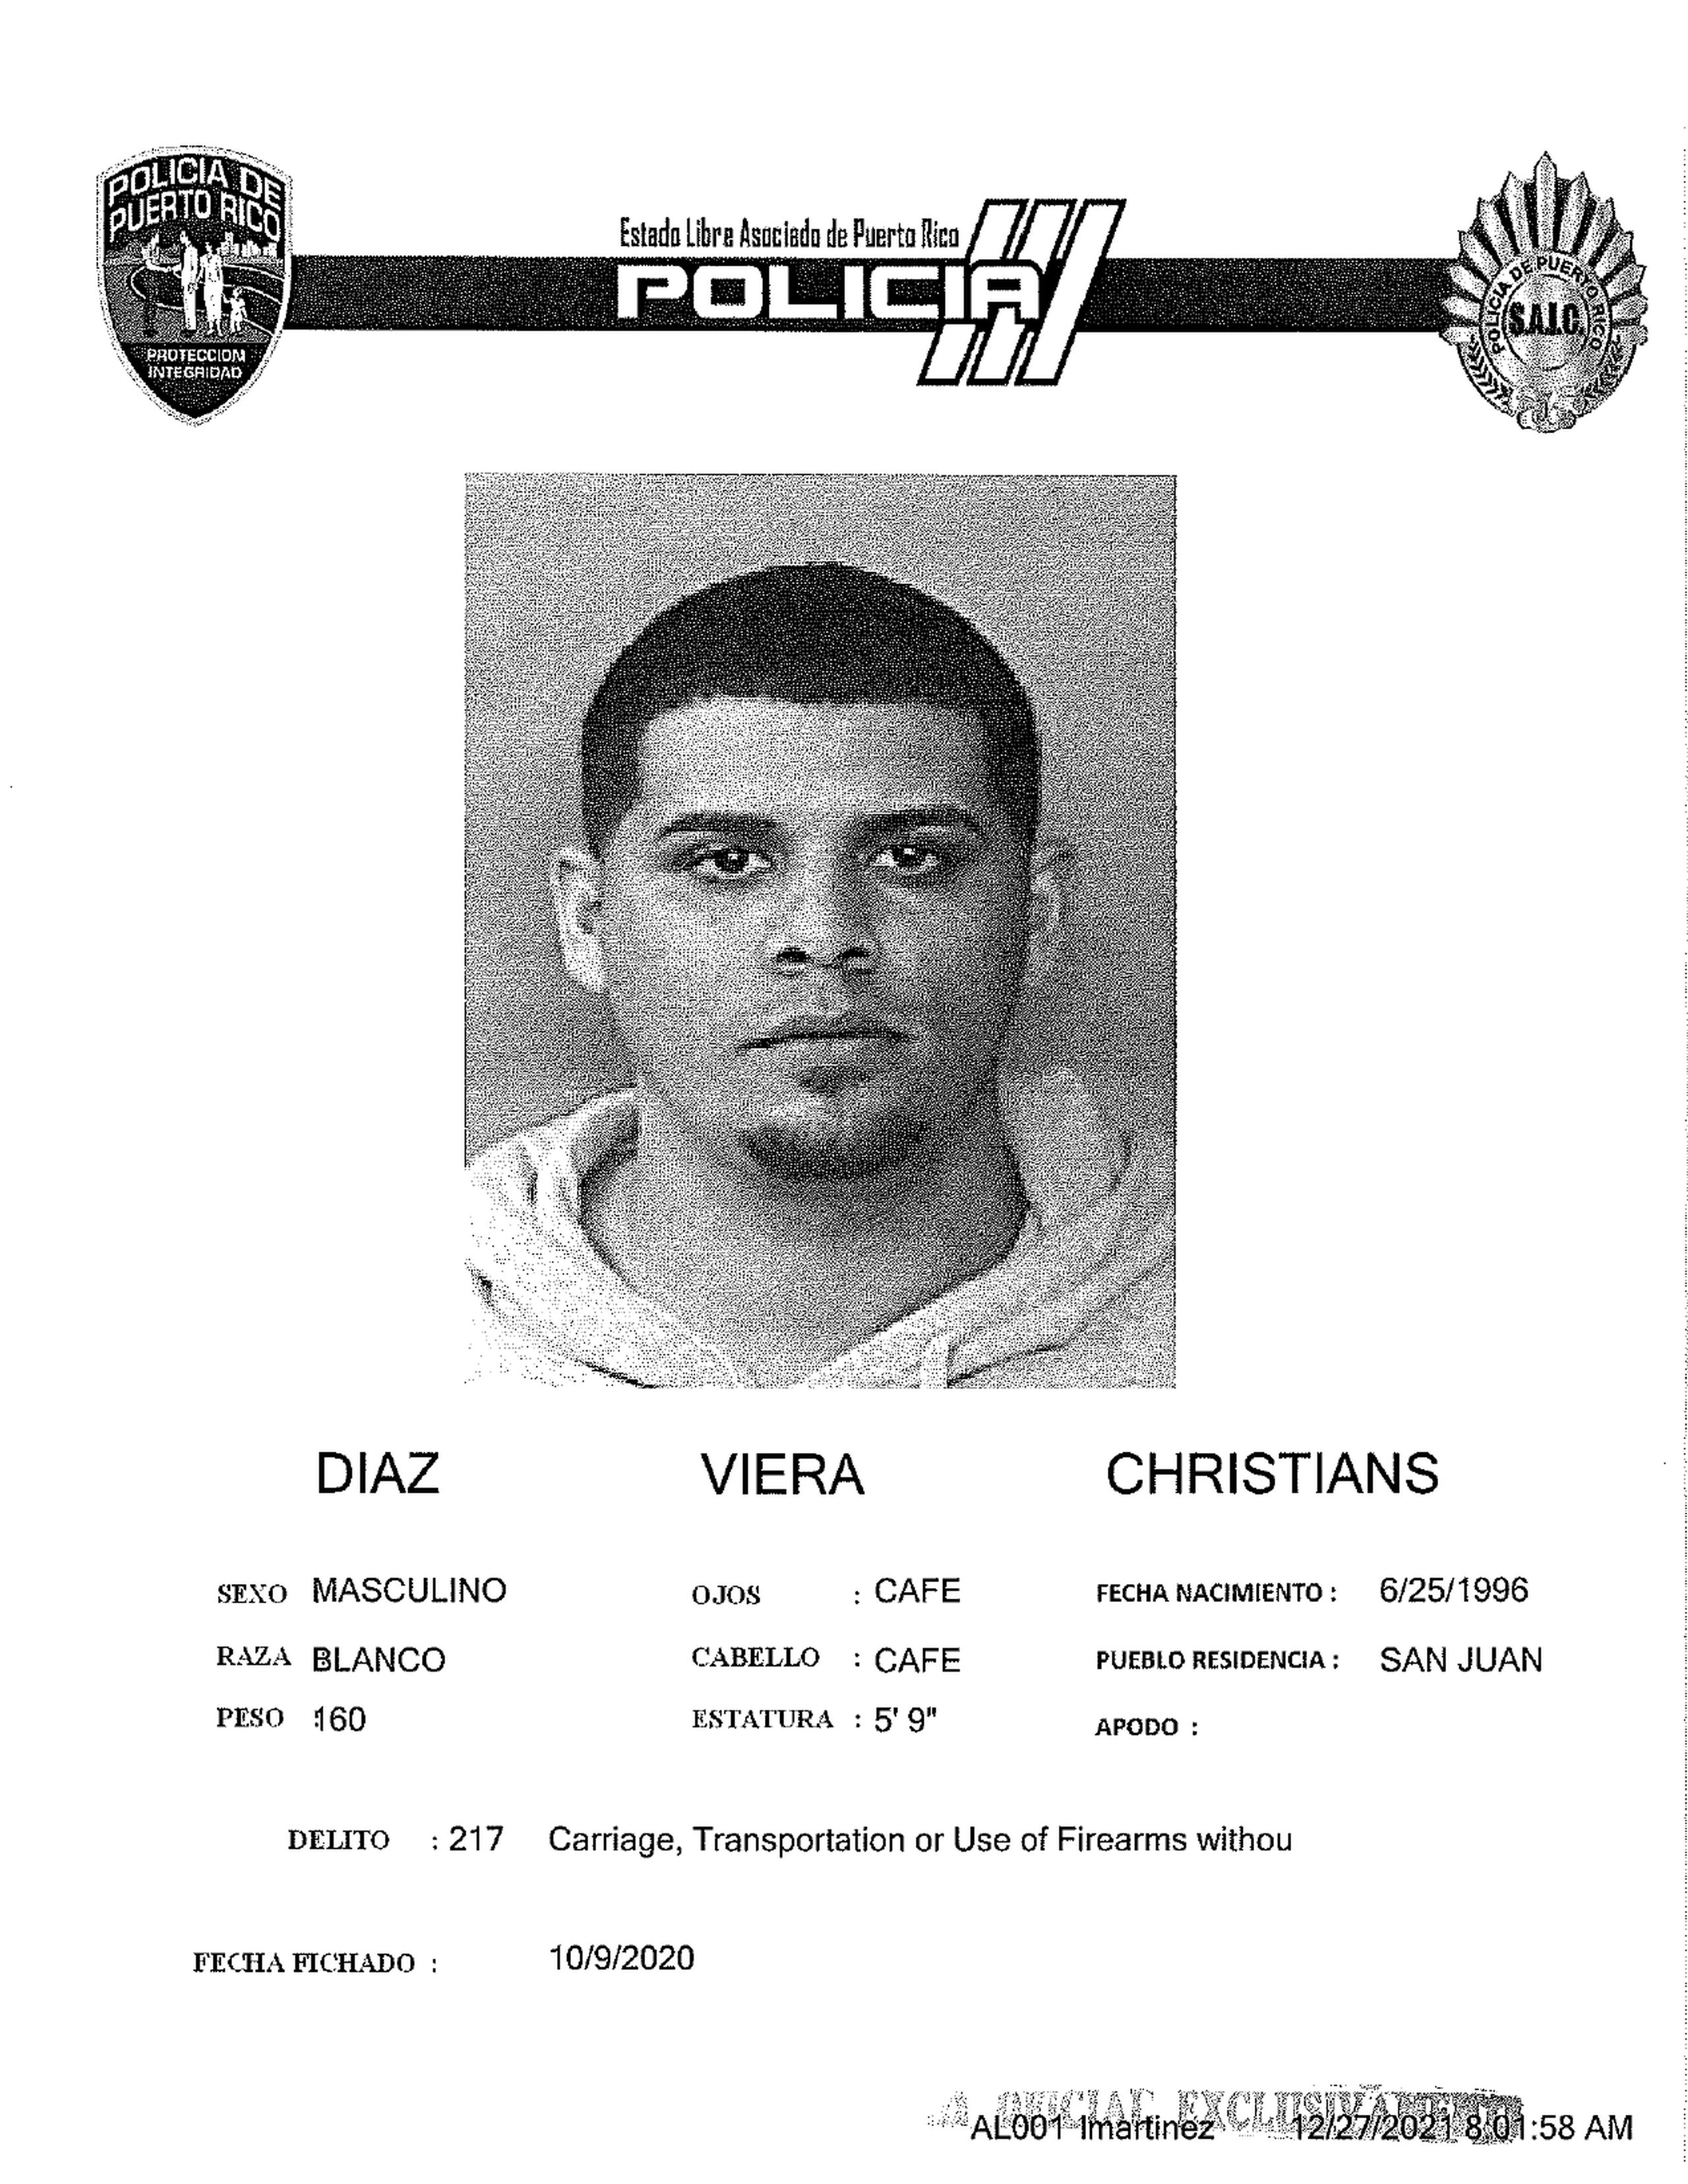 Christian Díaz Viera